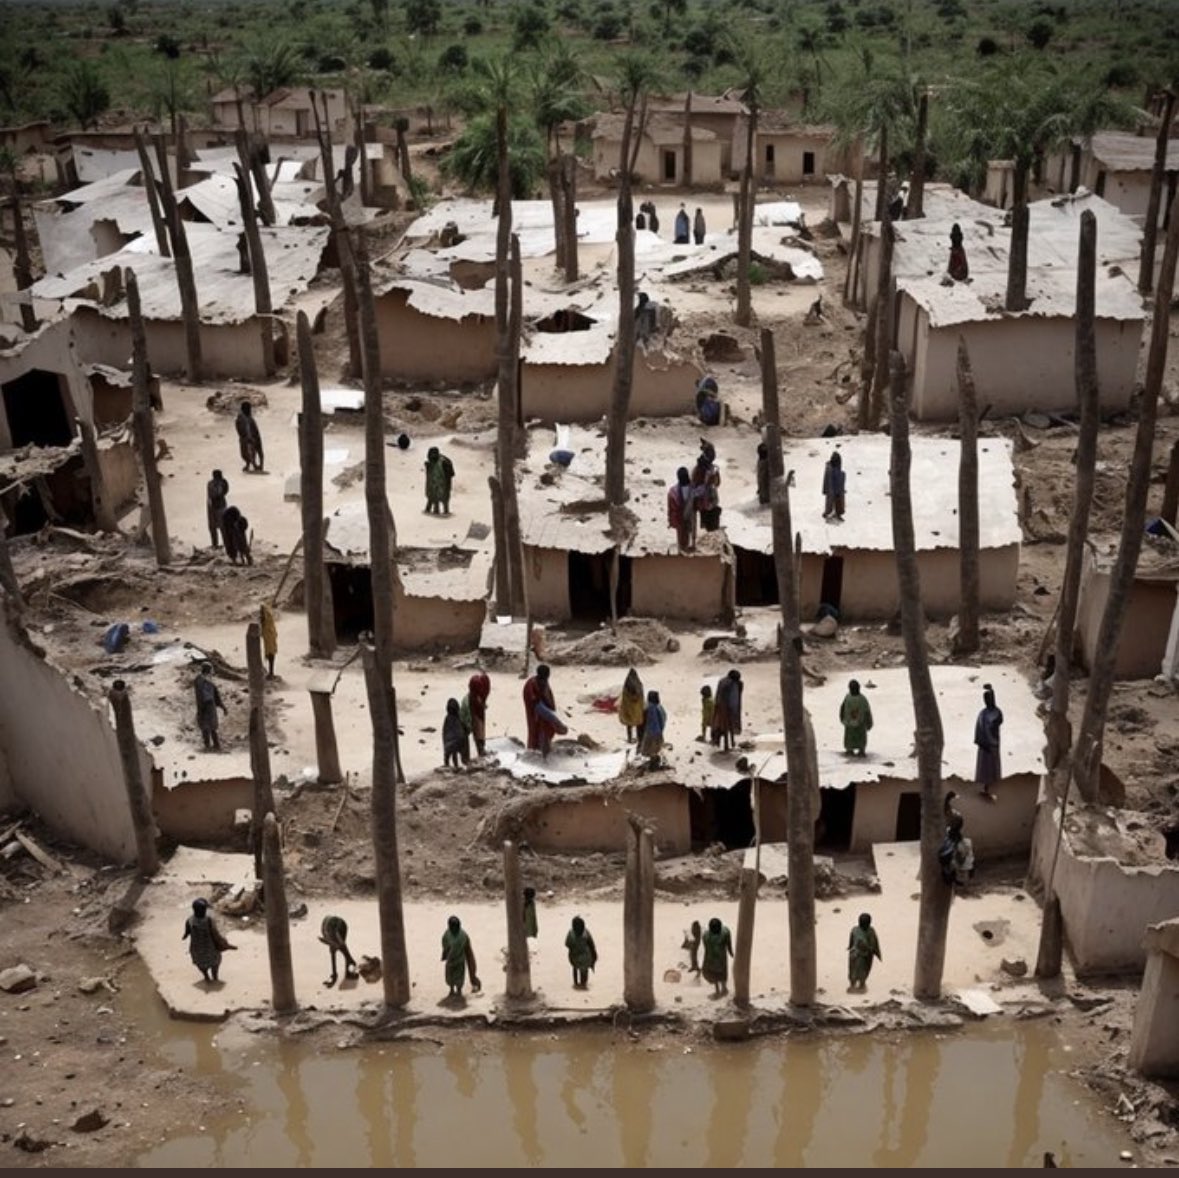 Hier horen we ook heel veel aandacht aan te geven maar geen enkele praattafel op de @NPO1 bespreekt het. Want islamisten moorden de Nigeriaanse christenen uit en daarover zwijgt de linkse media maar al te graag! #AllEyesonNigerianChristianGenocide